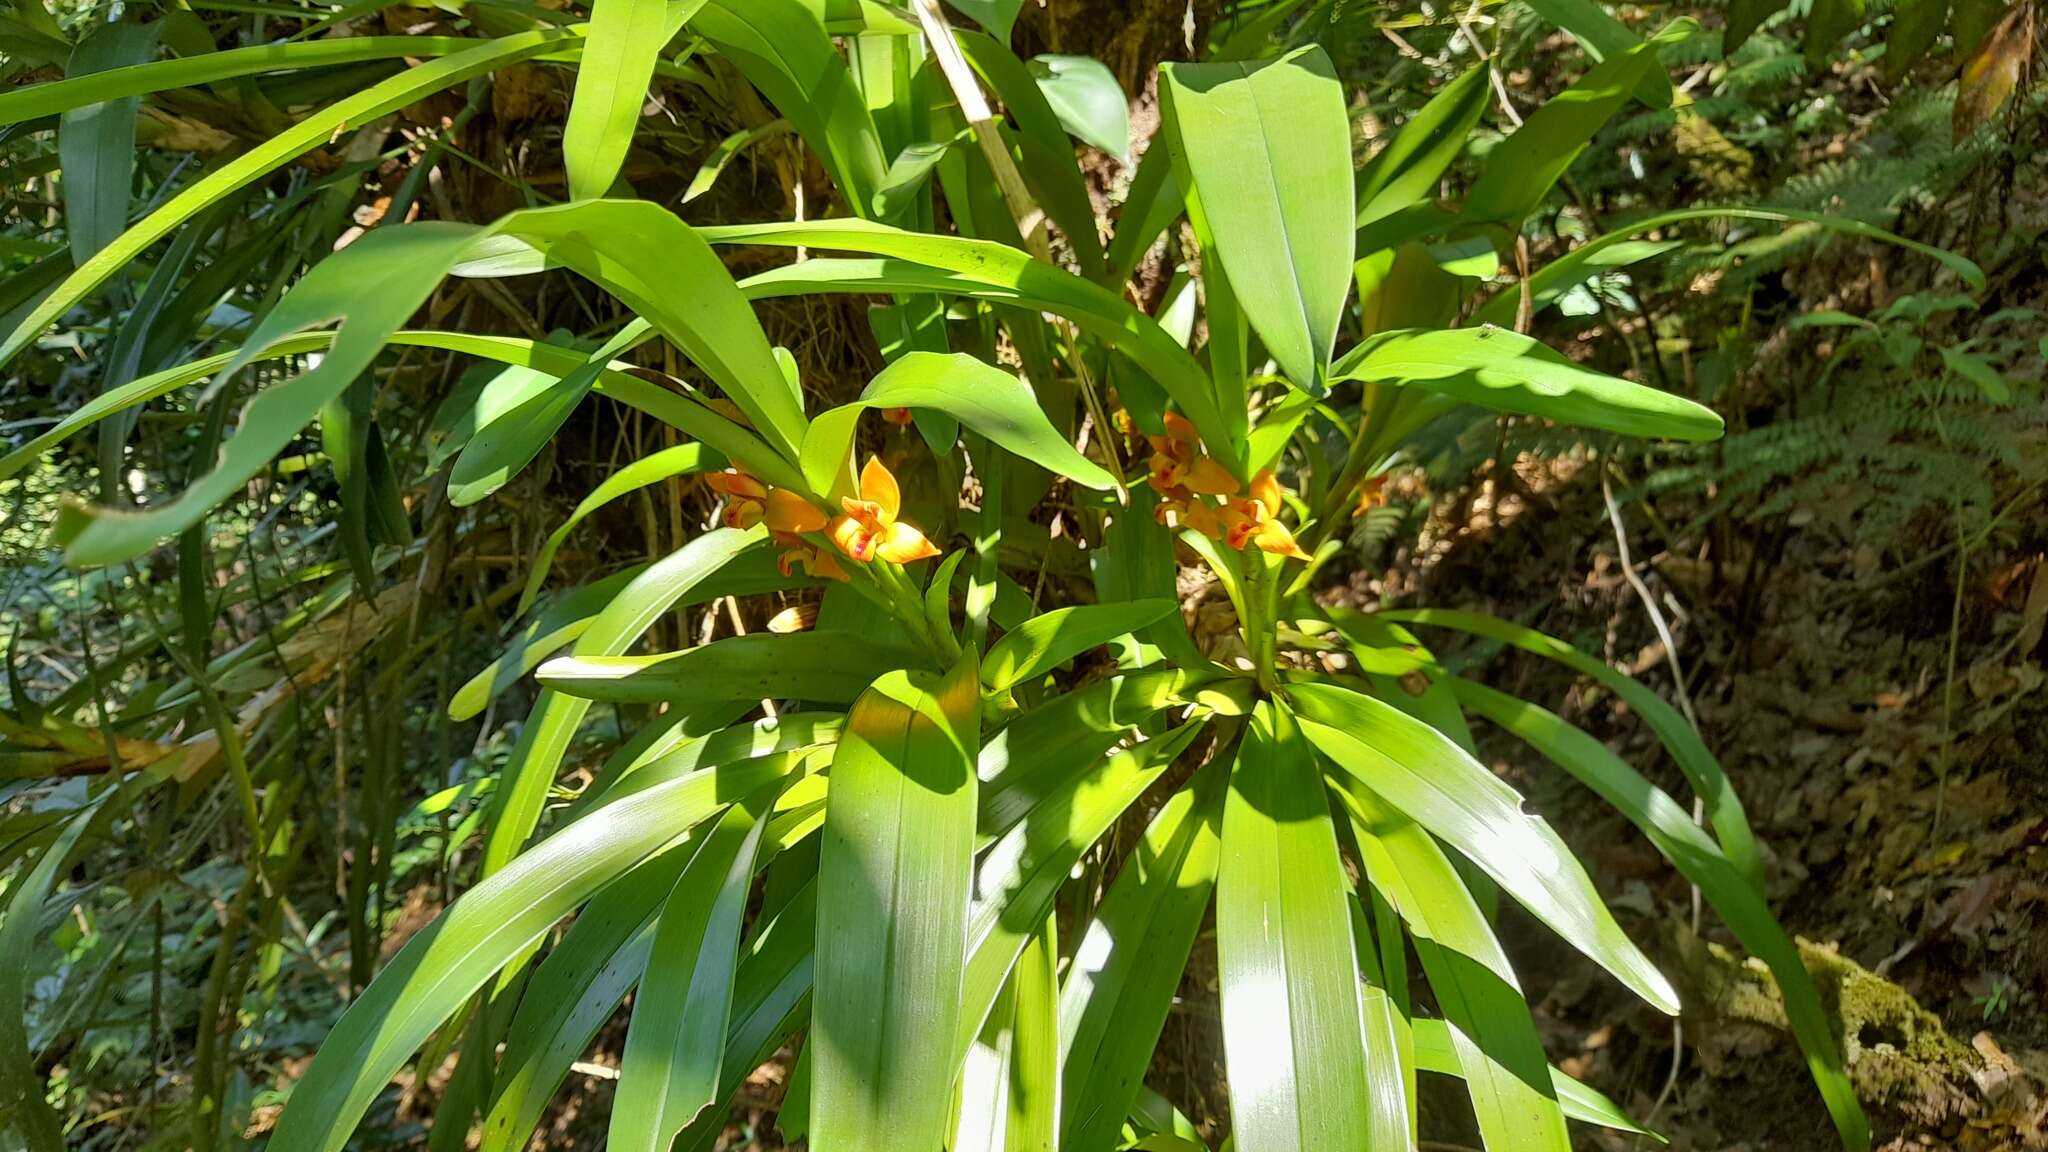 Image of Maxillaria elatior (Rchb. fil.) Rchb. fil.